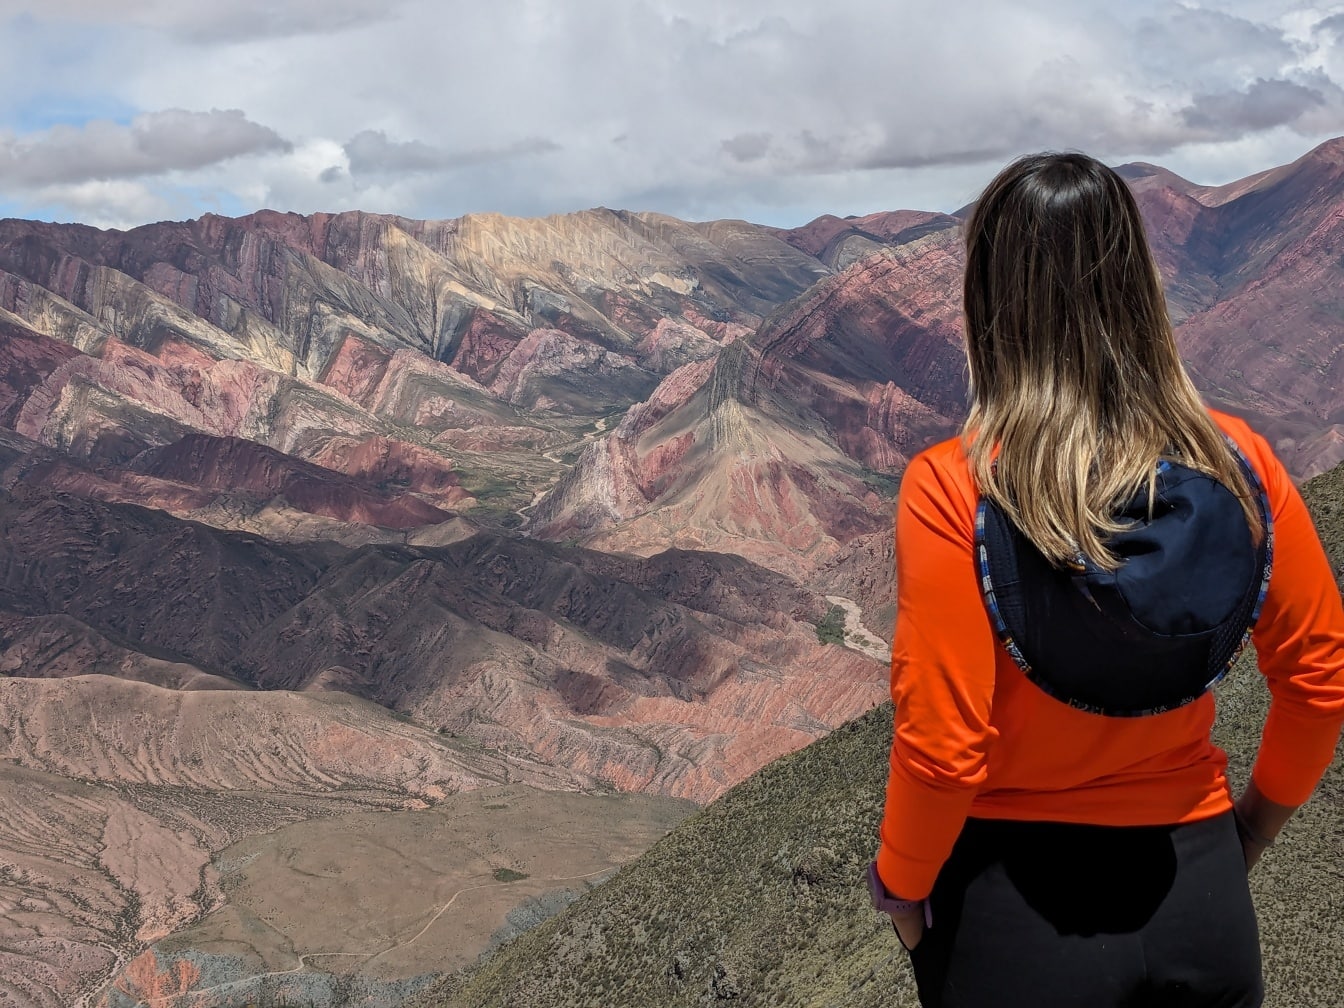 Eine umgedrehte Frau mit Hut auf dem Rücken steht auf dem Gipfel eines Berges und genießt das Panorama des Tals